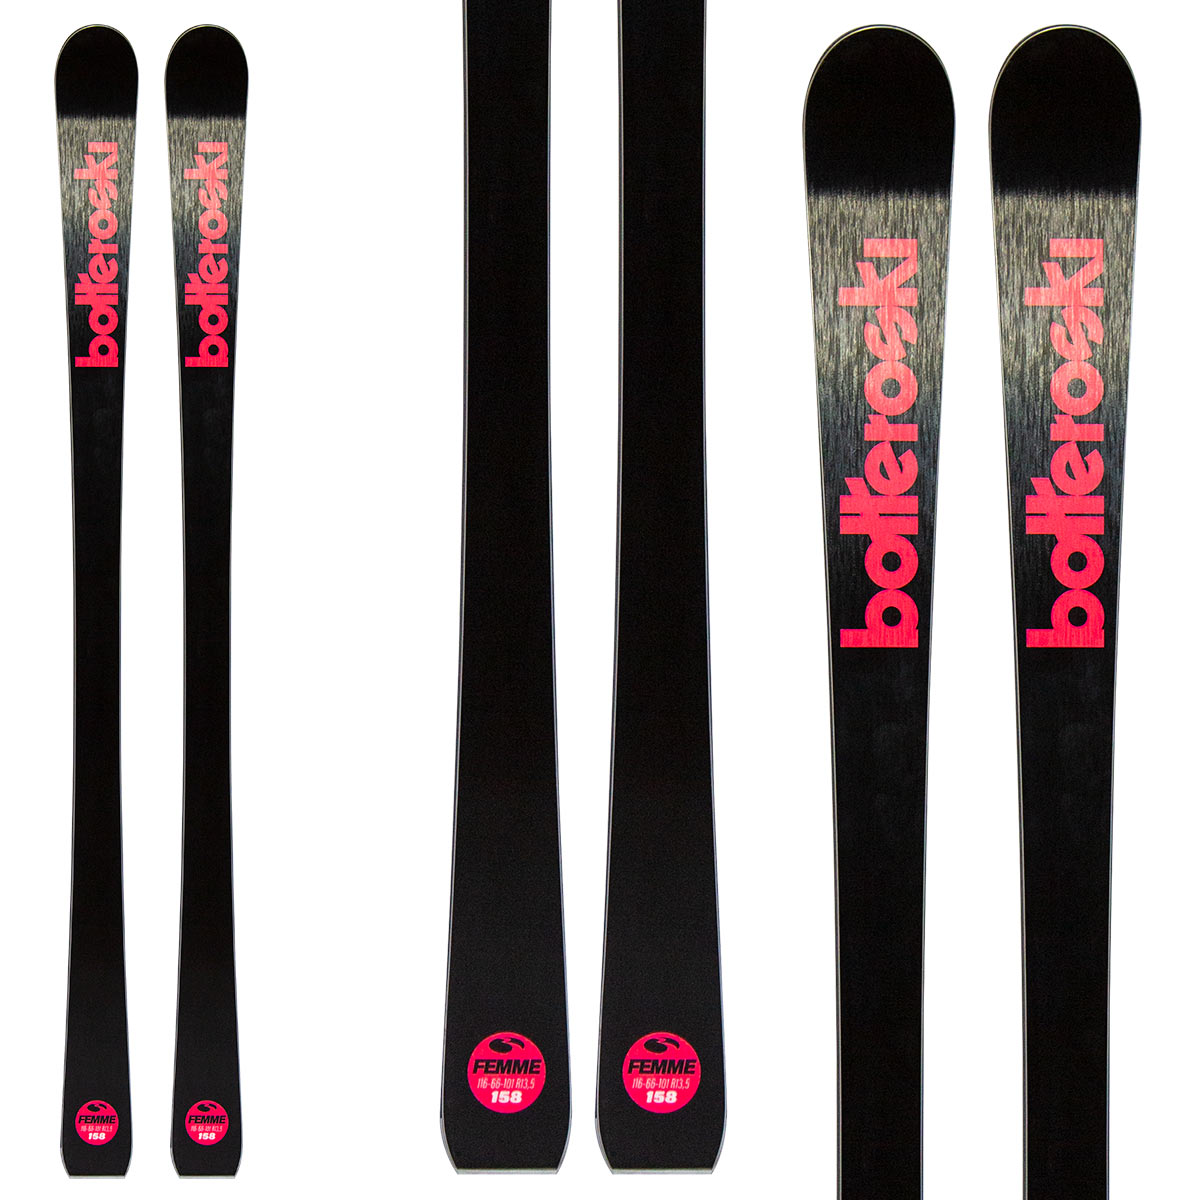  Sci Bottero Ski Femme + VL29 (Colore: nero-fucsia, Taglia: 166) 